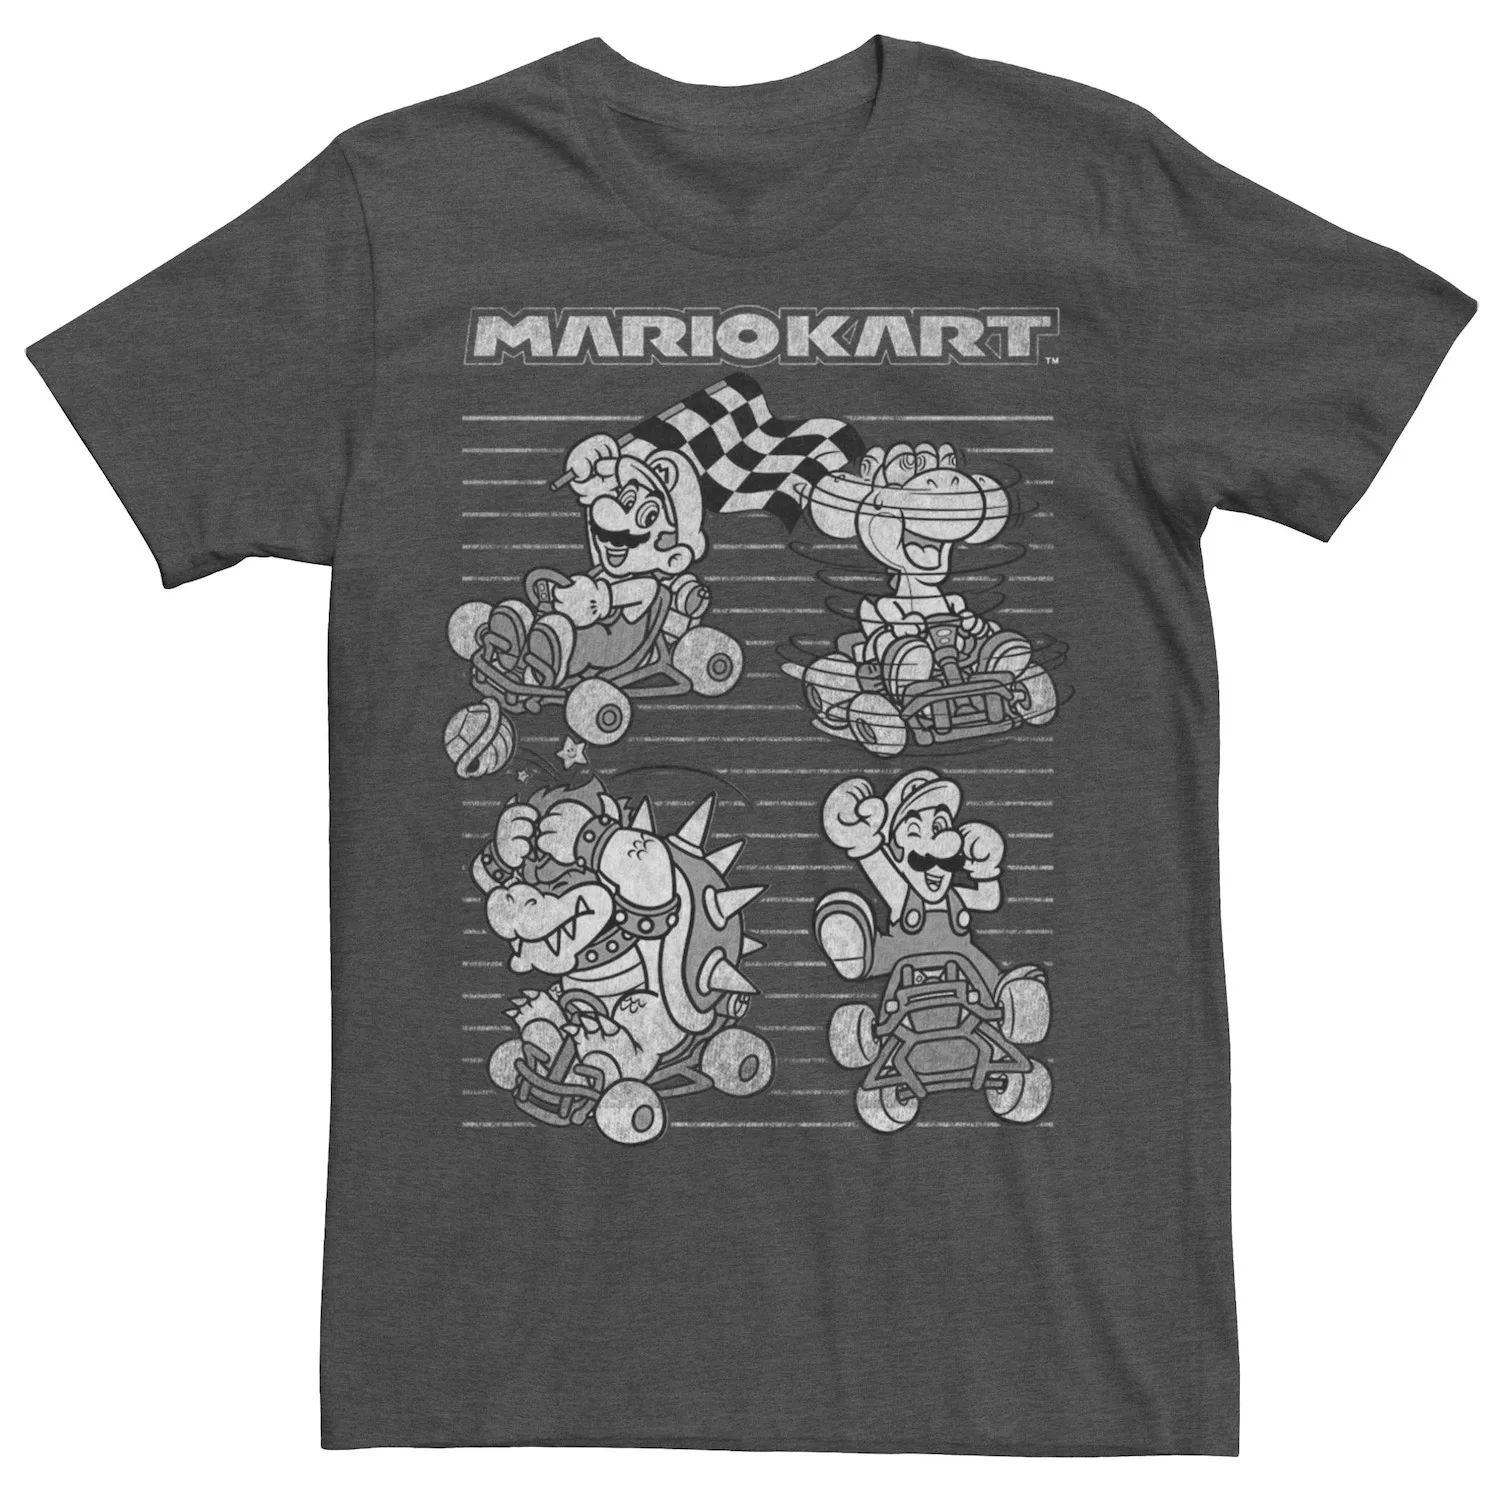 

Мужская футболка Mario Kart Mario Yoshi Bowser Luigi с портретами четырех игроков Licensed Character